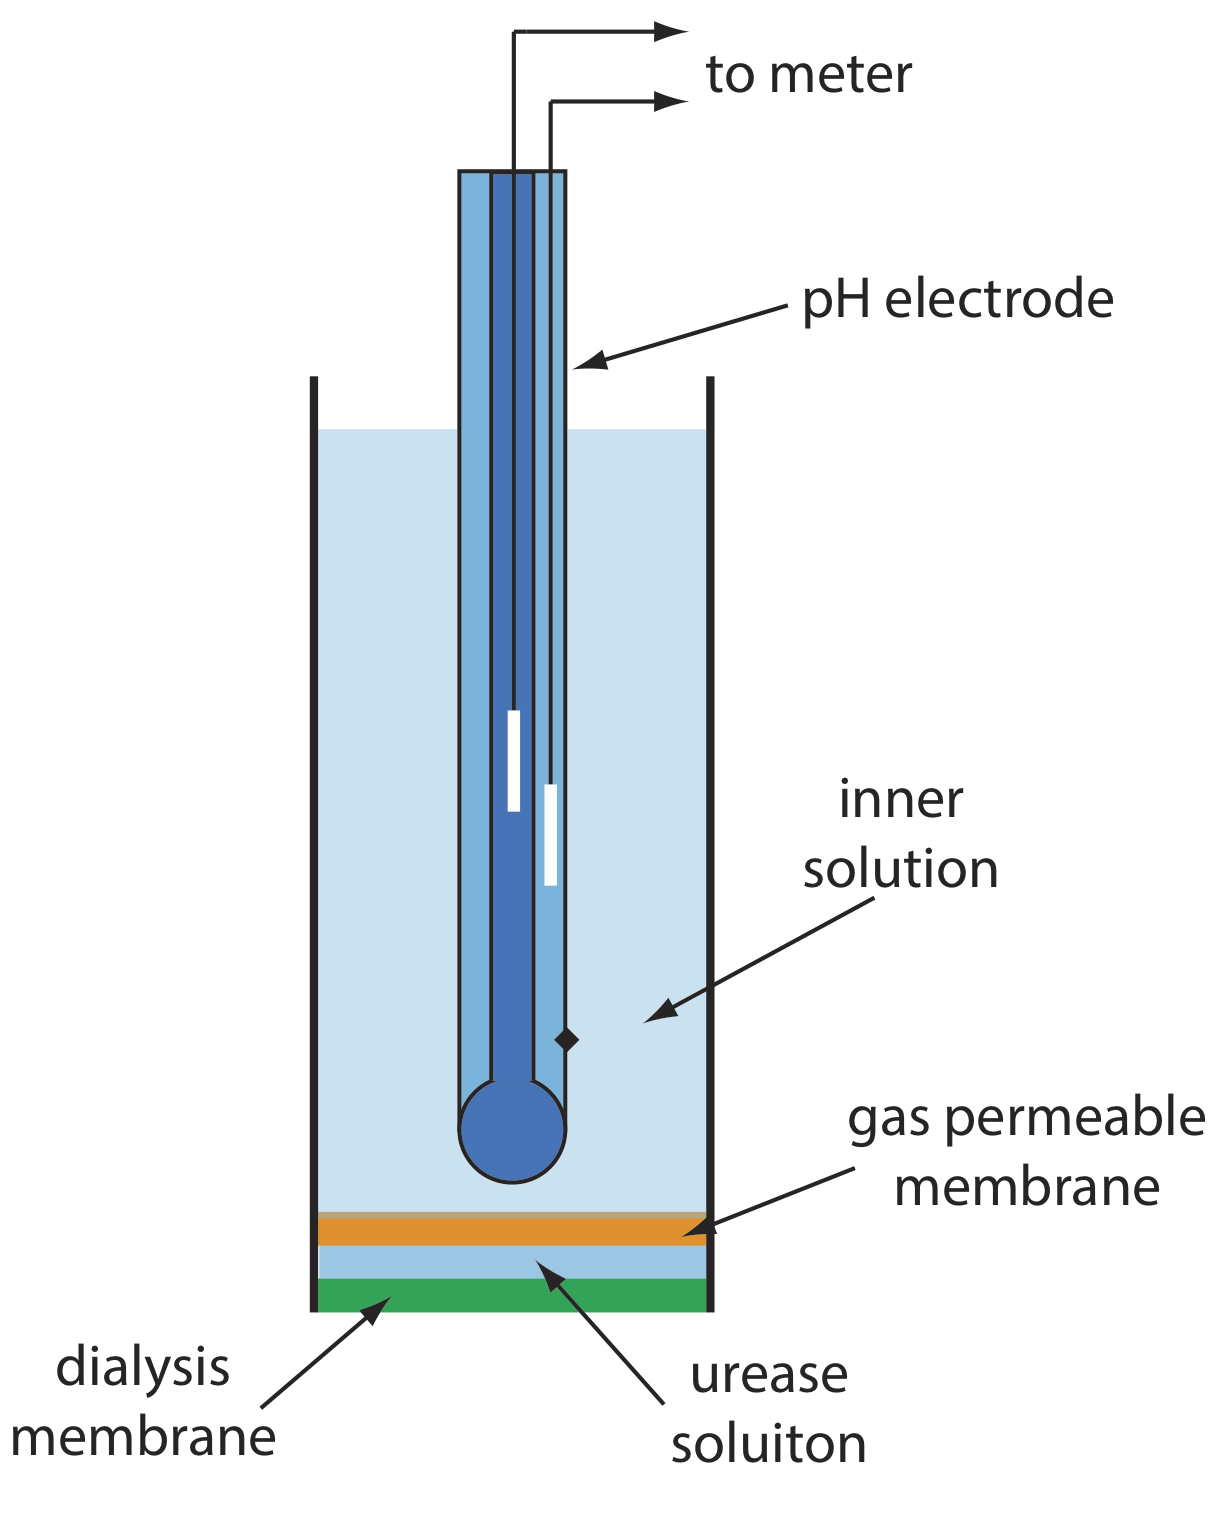 Diagrama esquemático que muestra un biosensor potenciométrico basado en enzimas para urea. Una solución de la enzima ureasa queda atrapada entre una membrana de diálisis y una membrana permeable a los gases. La urea se difunde a través de la membrana de diálisis y reacciona con la ureasa, produciendo NH3 que se difunde a través de la membrana permeable al gas. El cambio resultante en el pH de la solución interna se mide con el electrodo de pH.